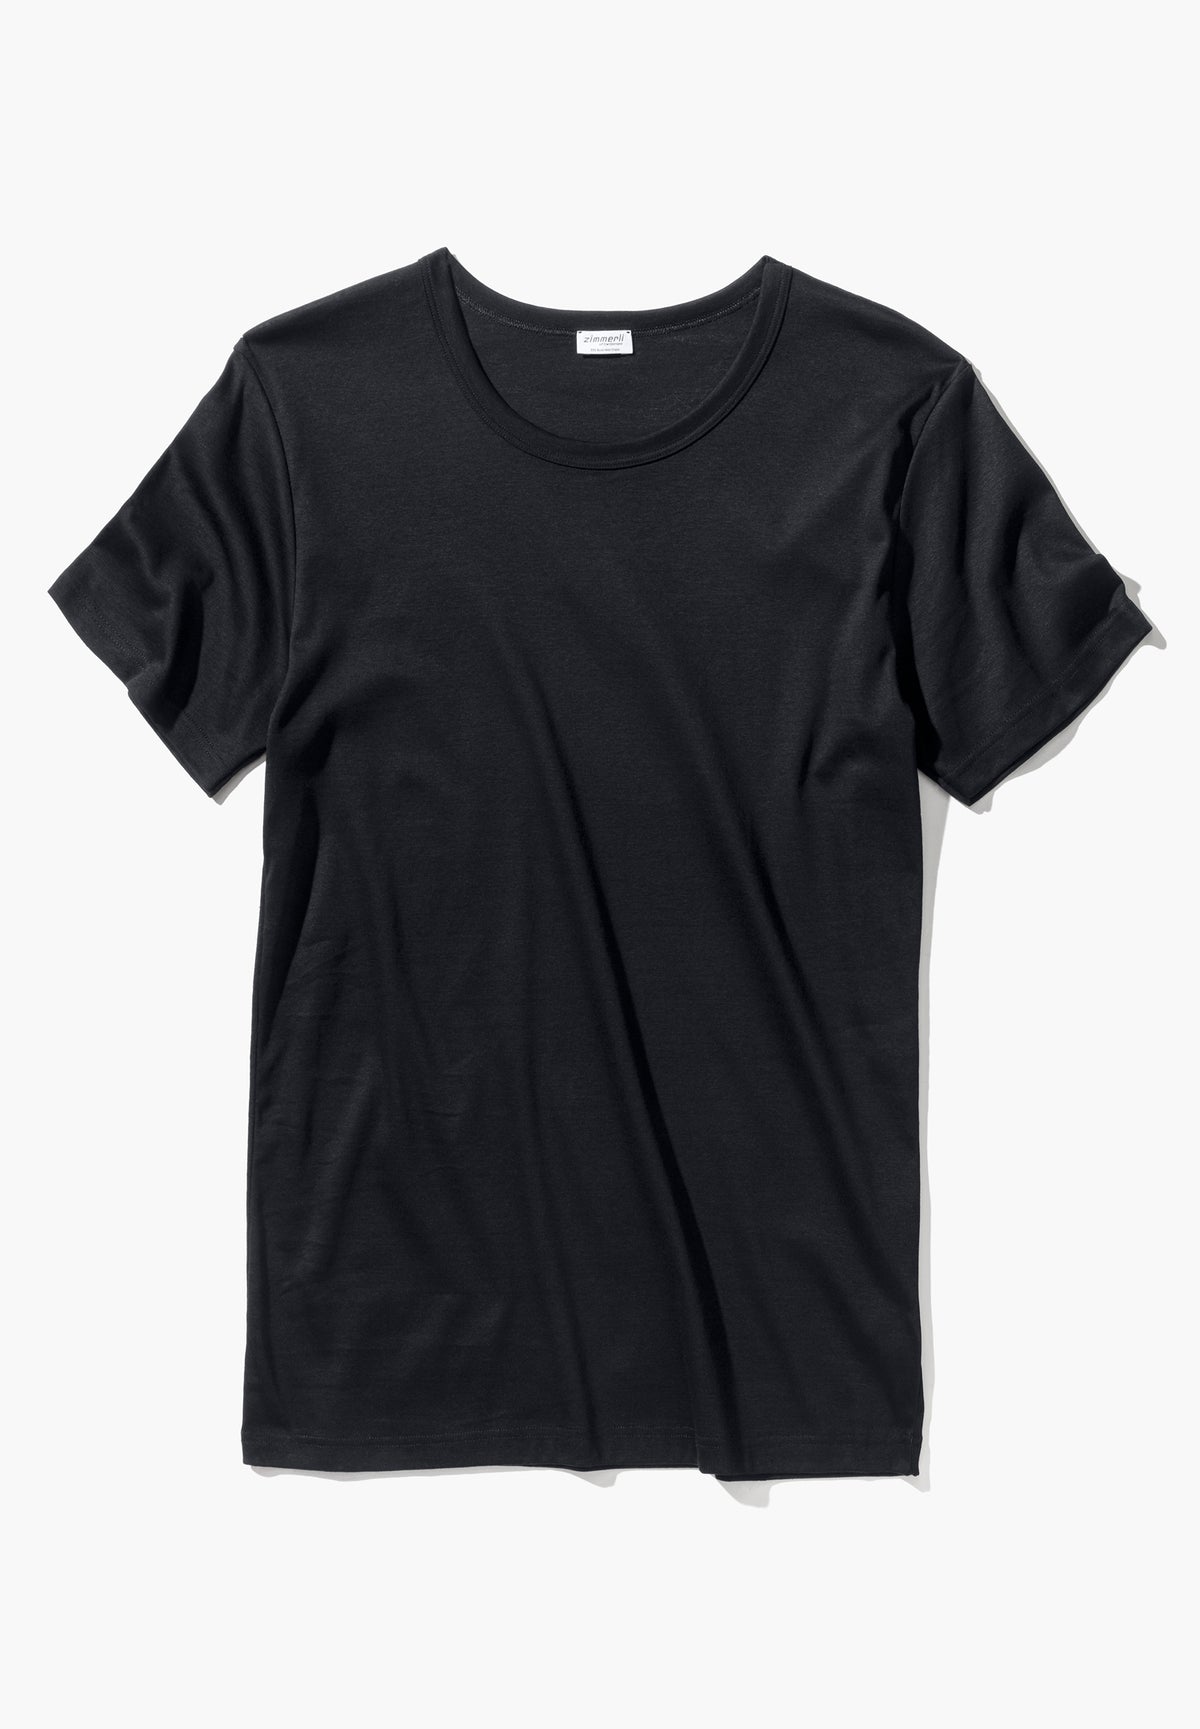 Business Class | T-Shirt Short Sleeve - black